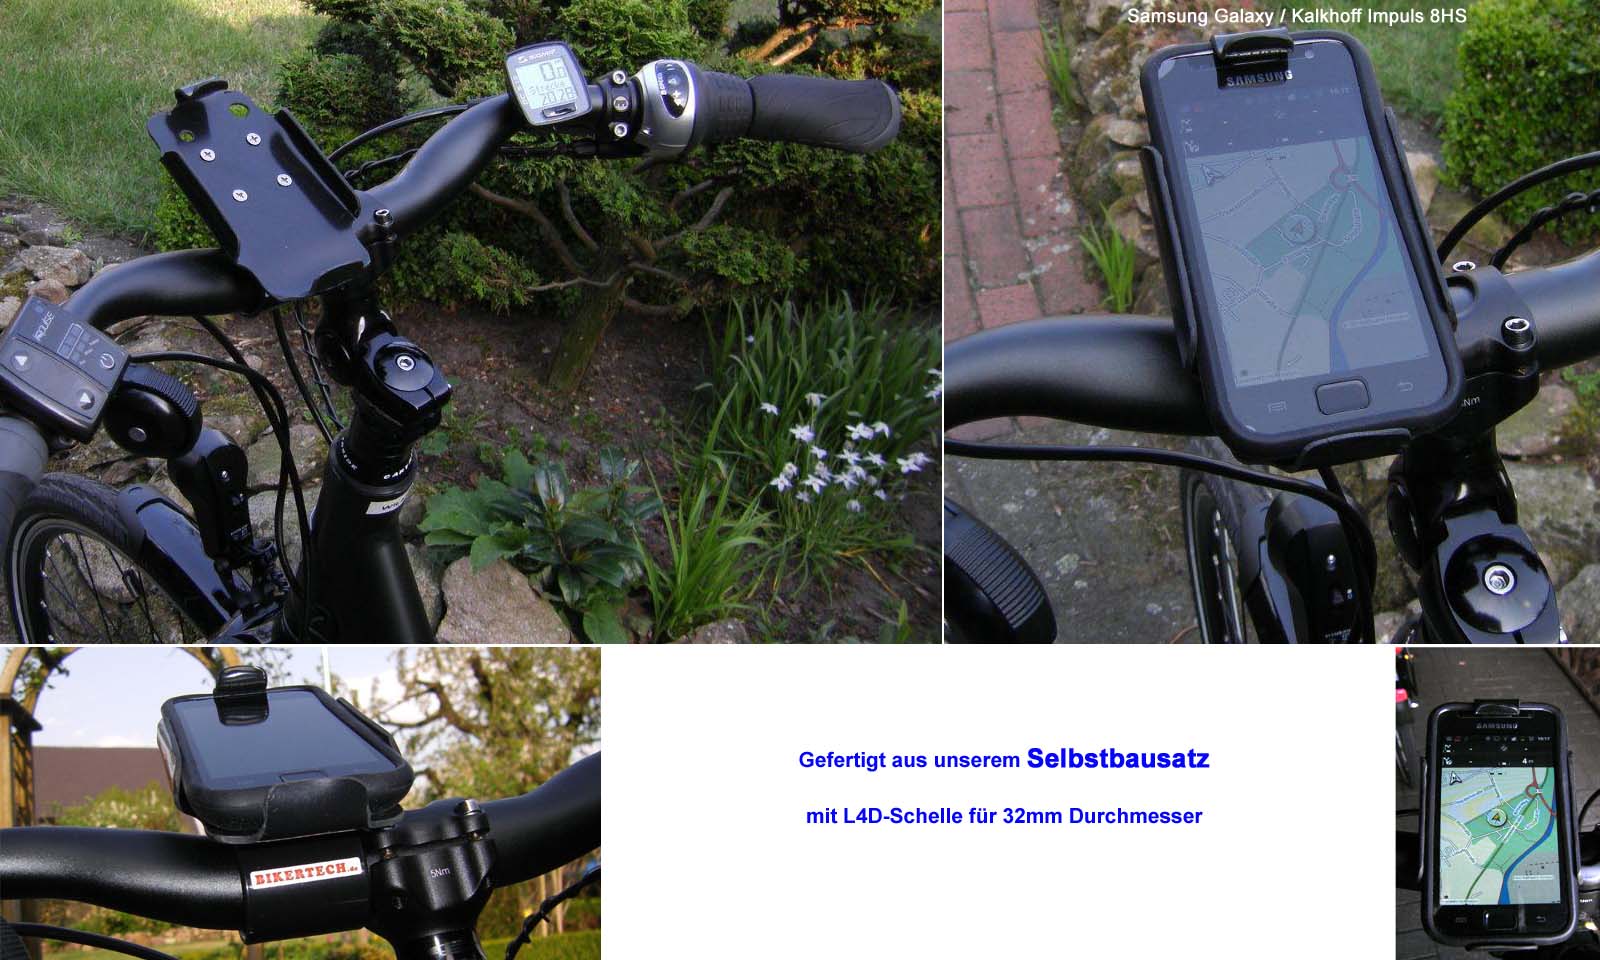 Schliessen von Selbstbausatz-SAMSUNG_am_Fahrrad_32mm_L4D-Schelle.jpg